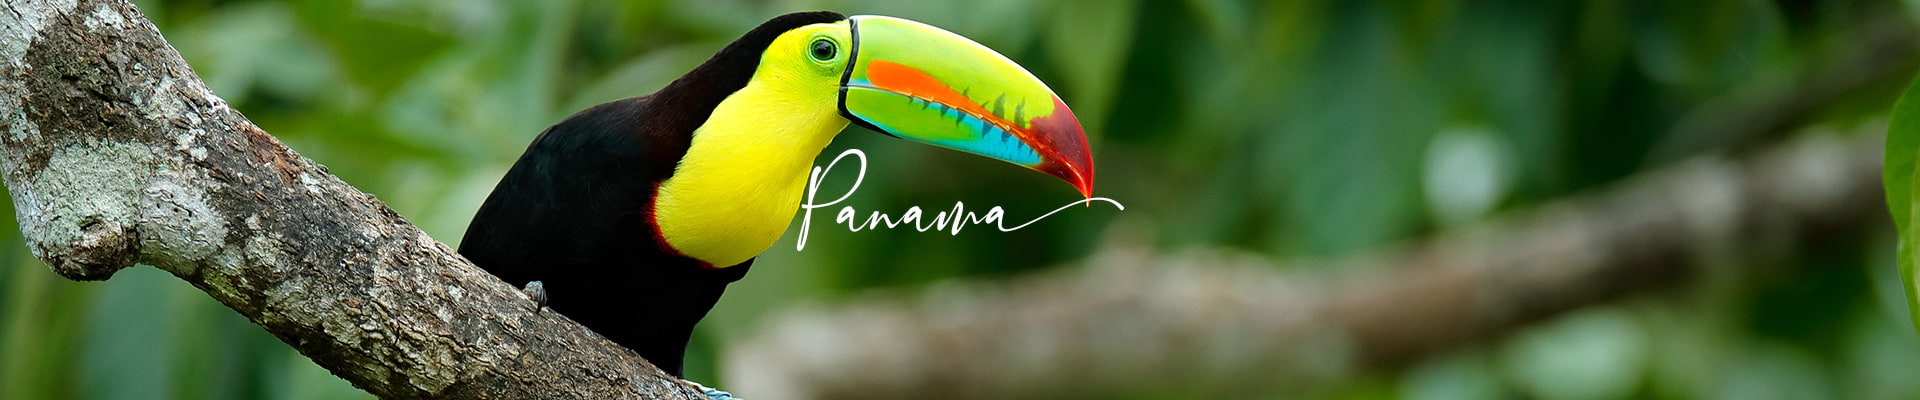 images/panos/desktop/panama